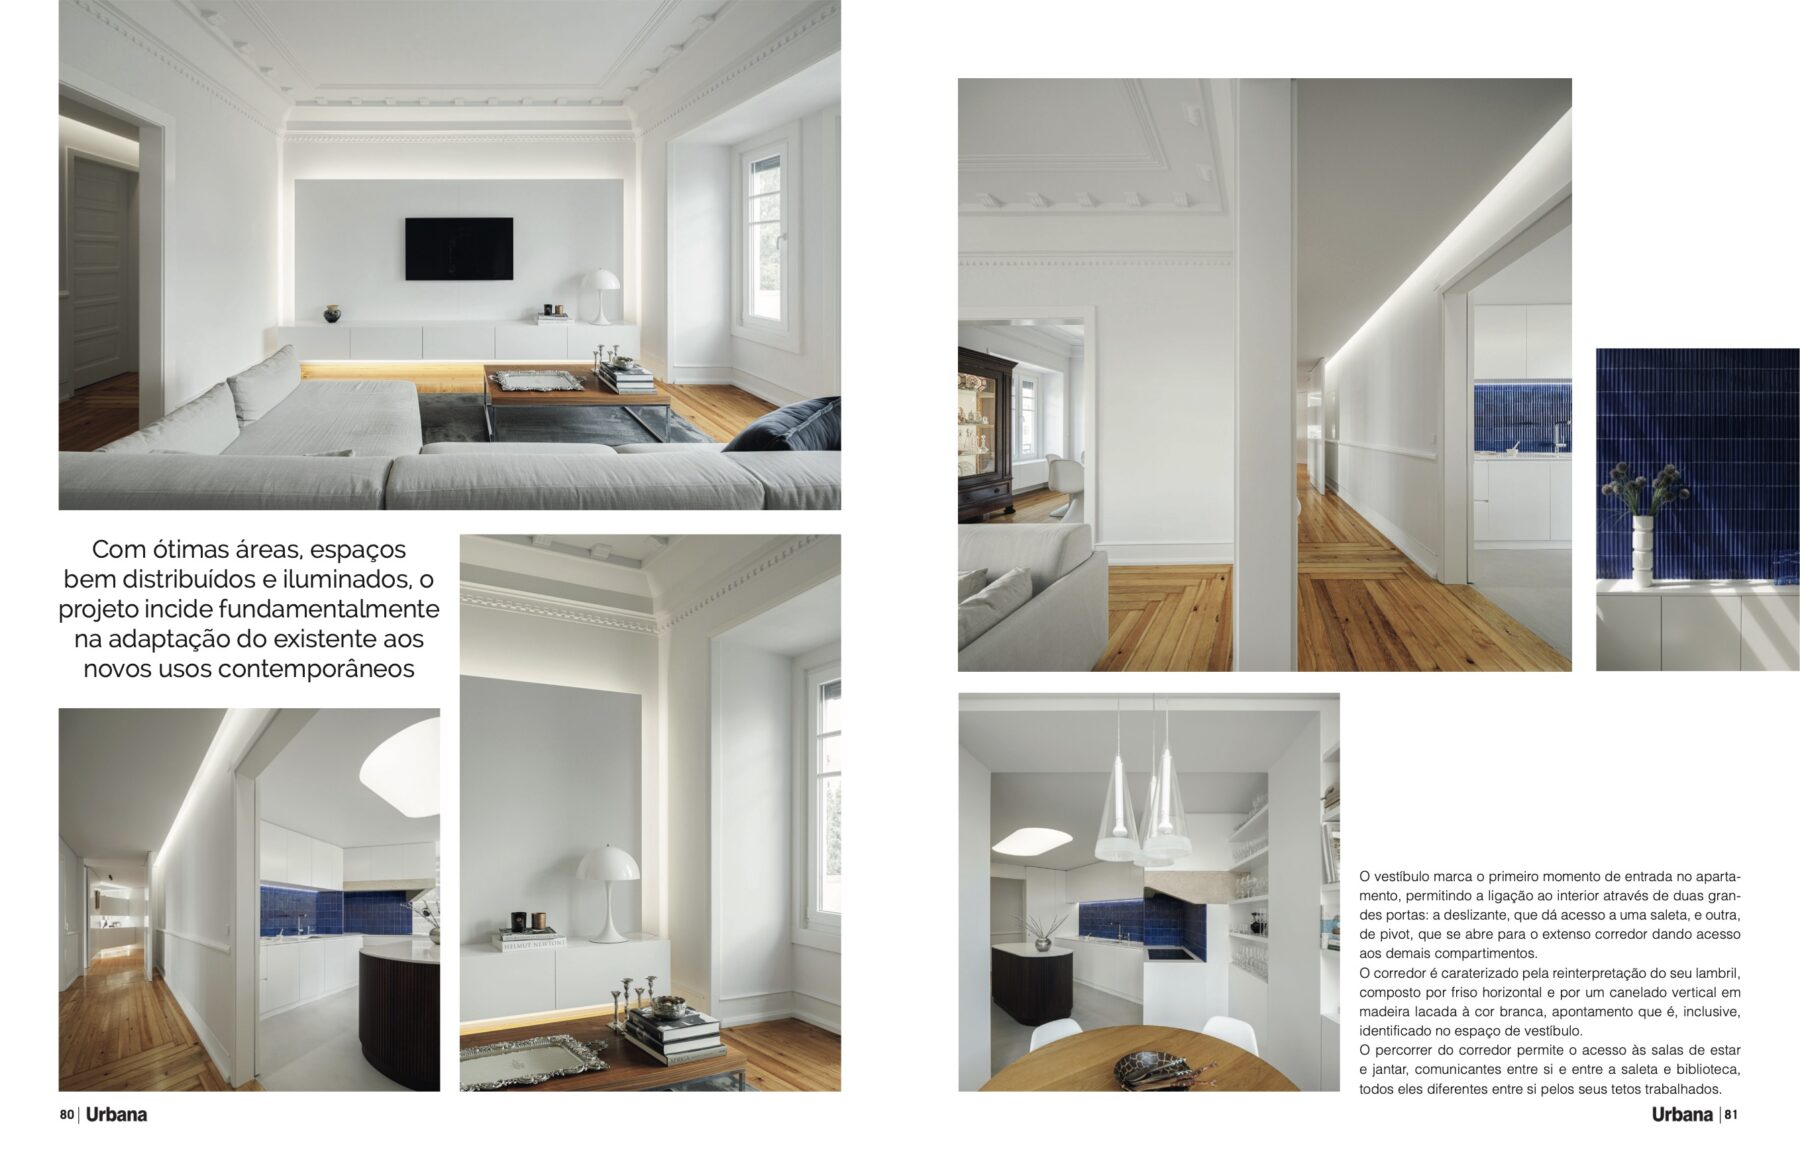 Revista Urbana #111 do atelier nmdarq com fotografia arquitetura de ivo tavares studio - architectural photography